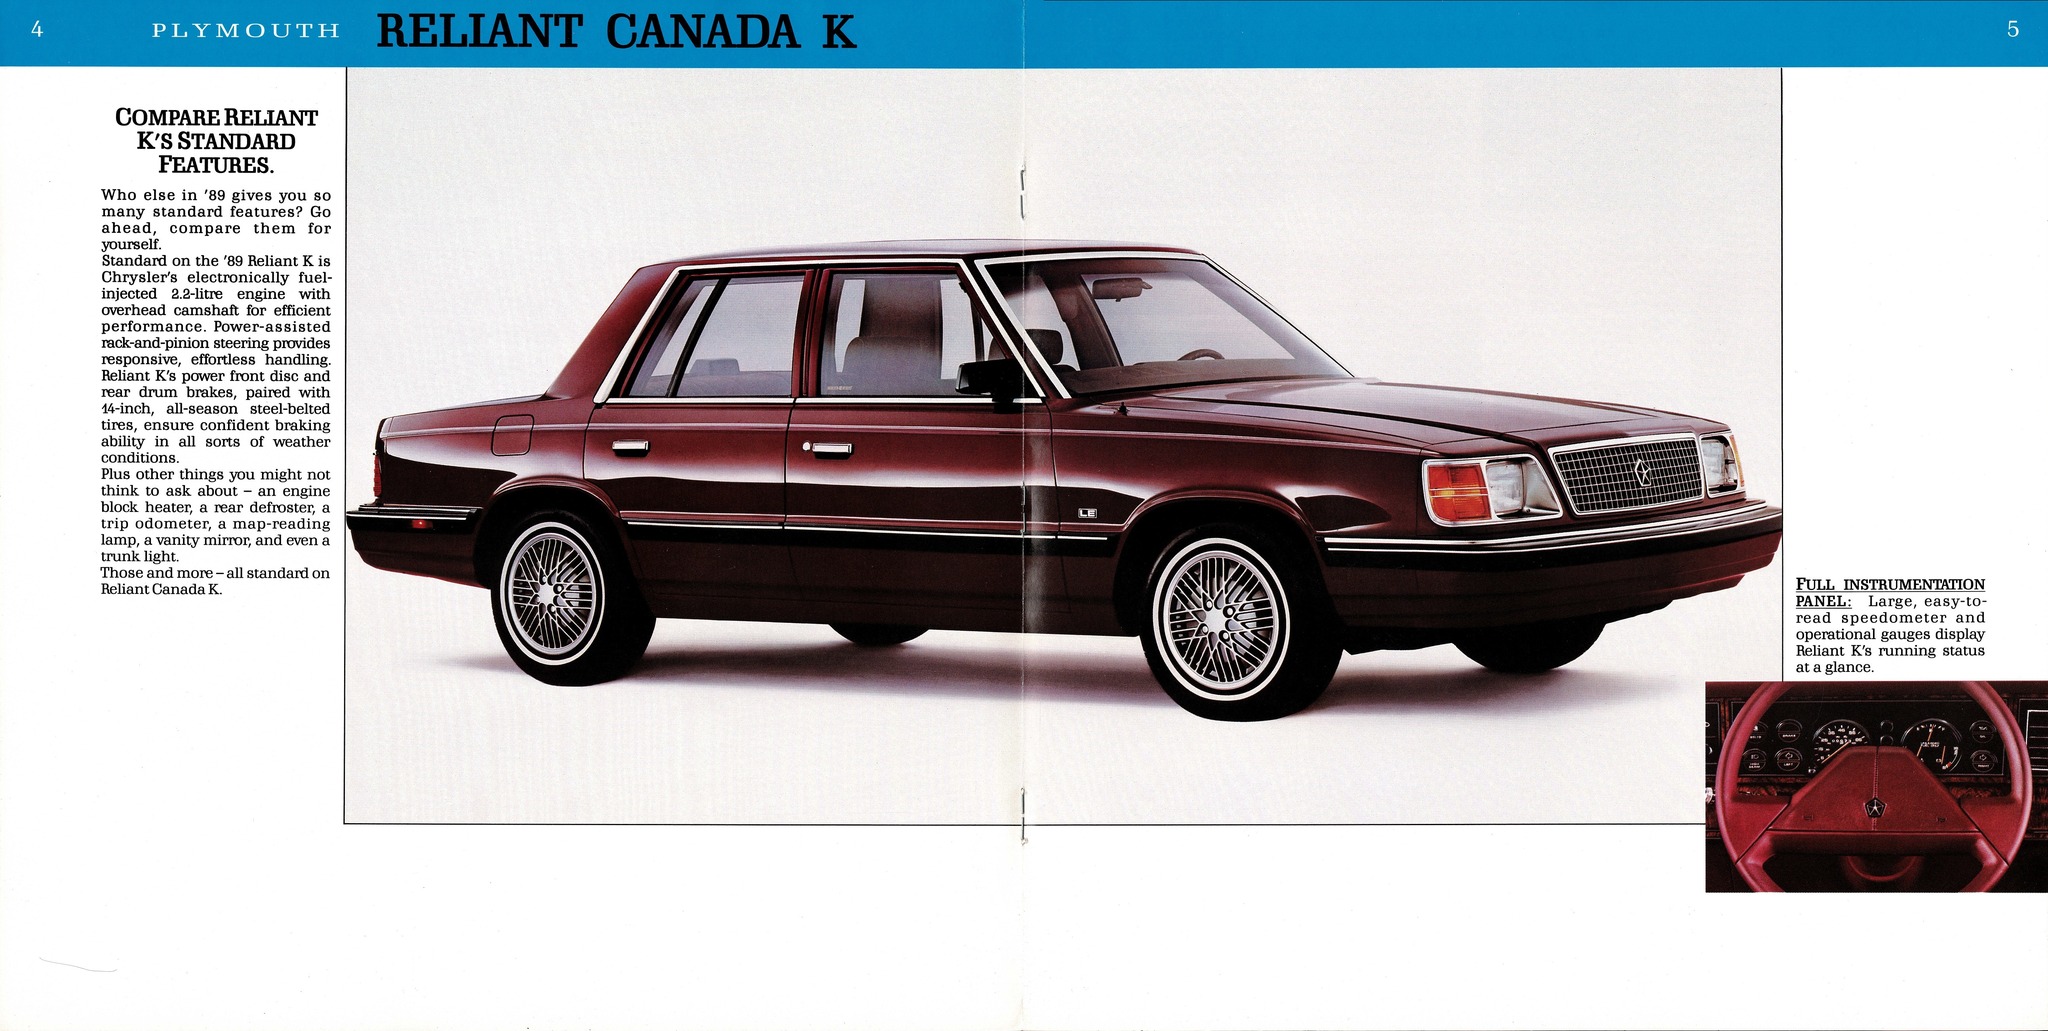 1981 Plymouth Reliant Canada K Brochure 04-05